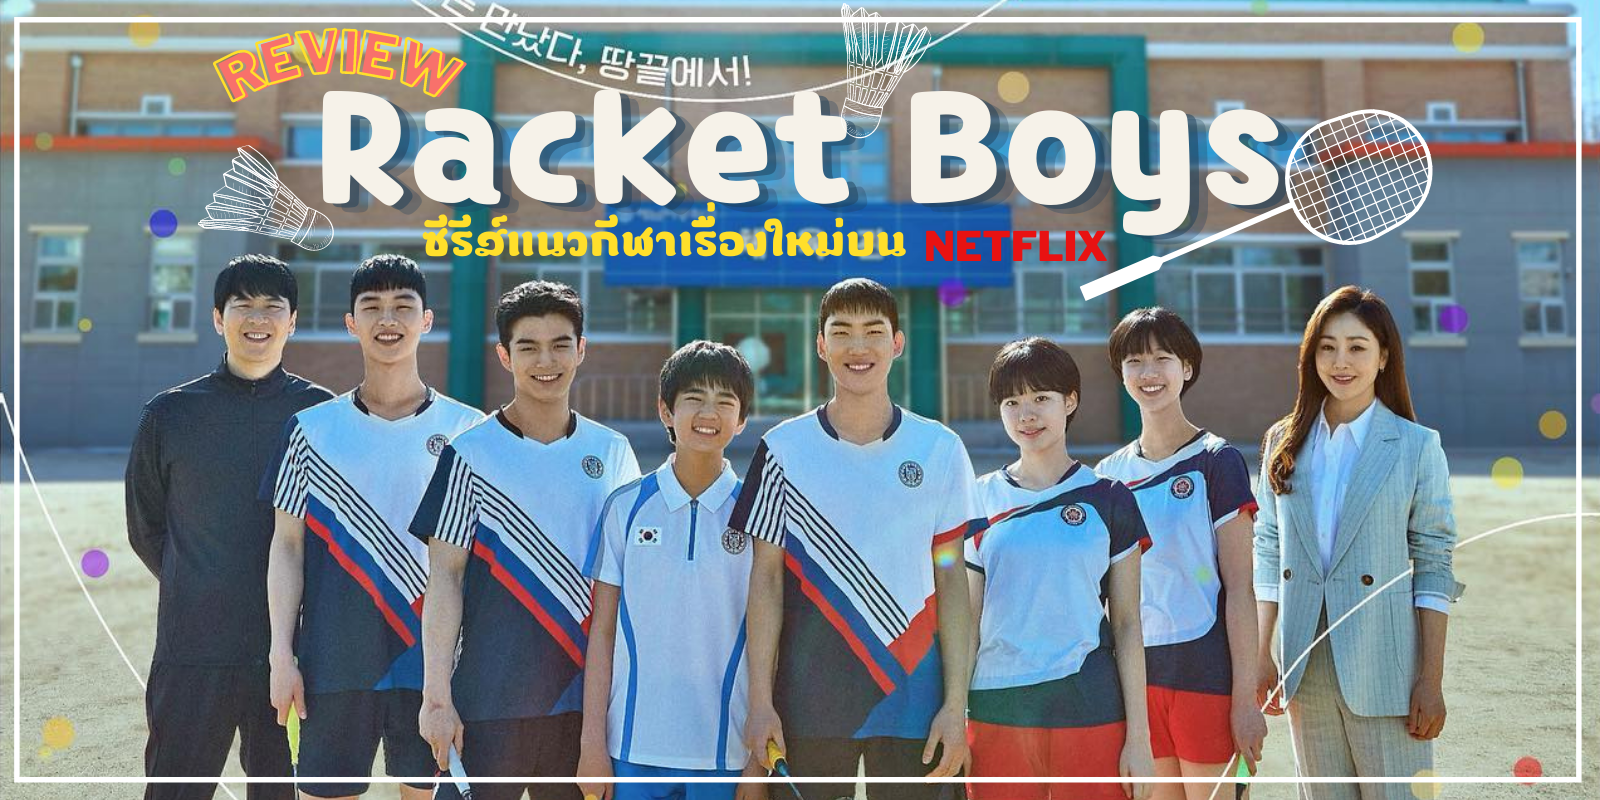 Racket boys netflix